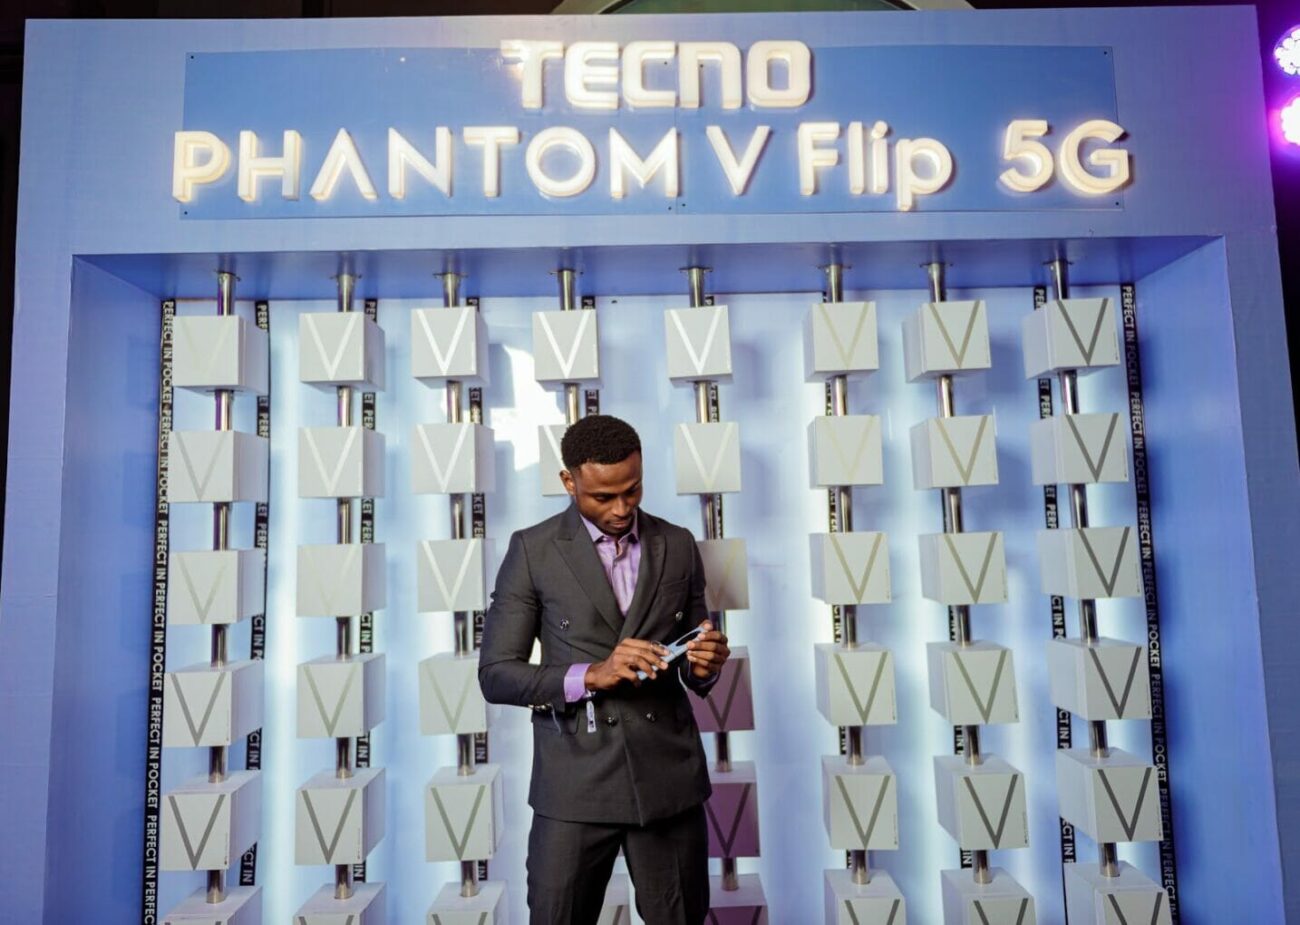 Phantom V Flip 5g unveil